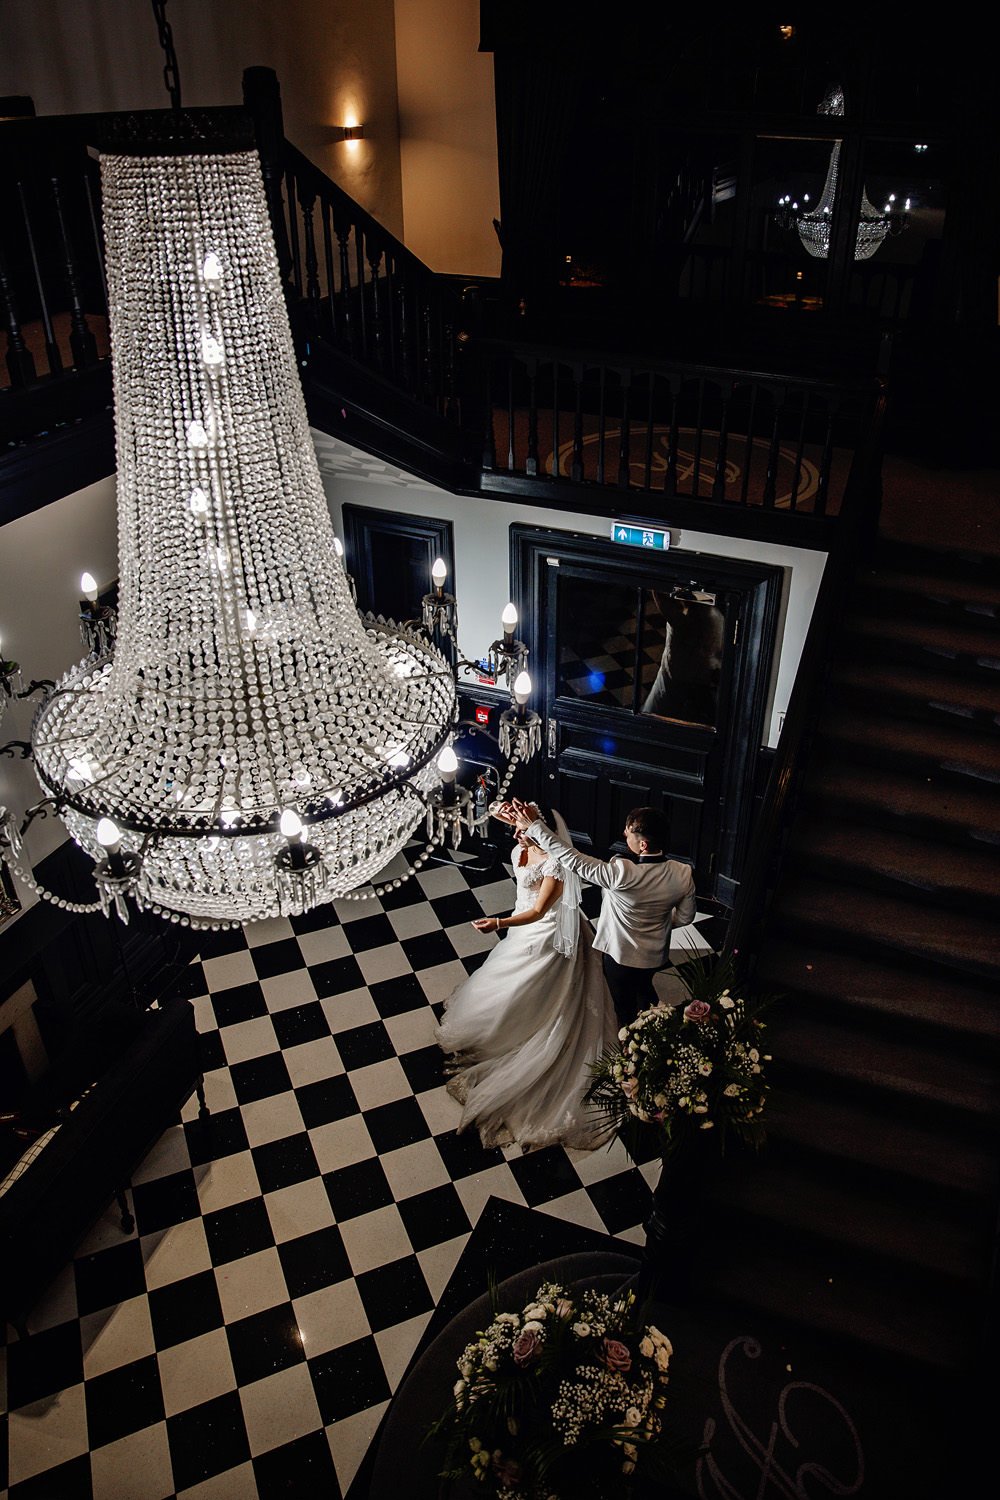 Romantic wedding dance under the chandelier